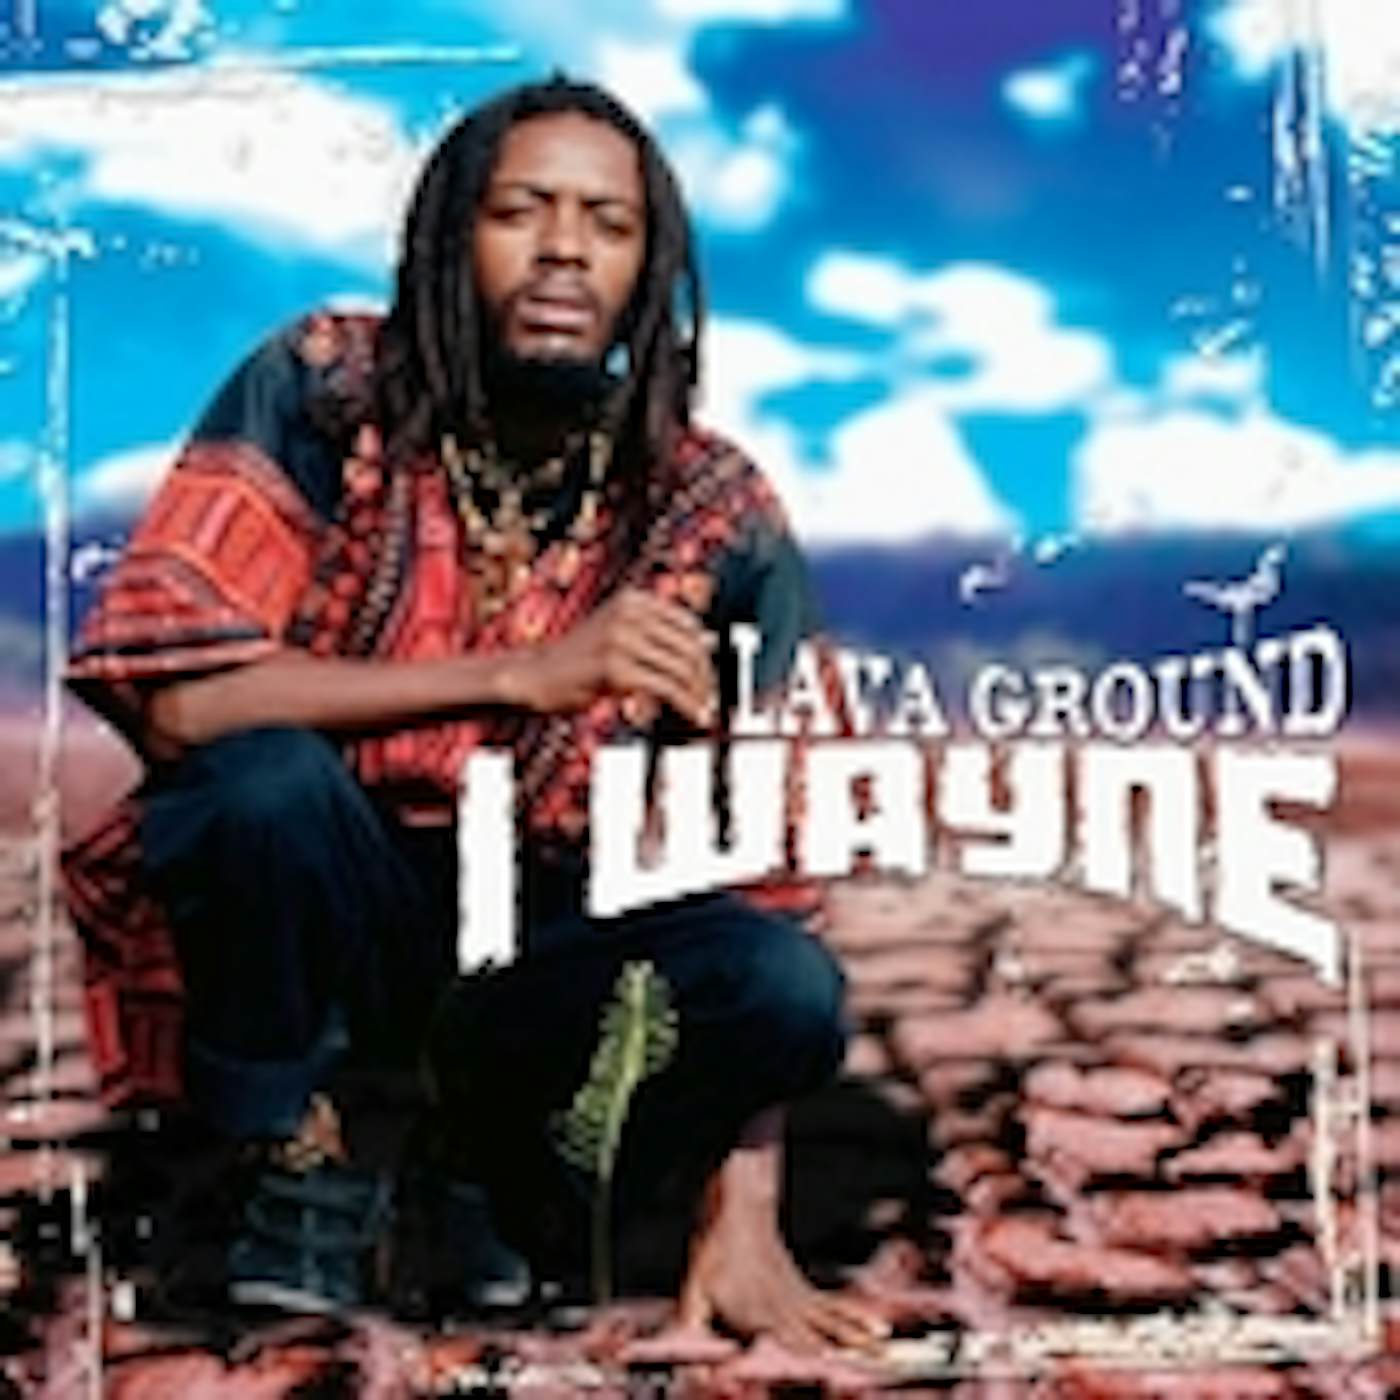 I Wayne LAVA GROUND CD